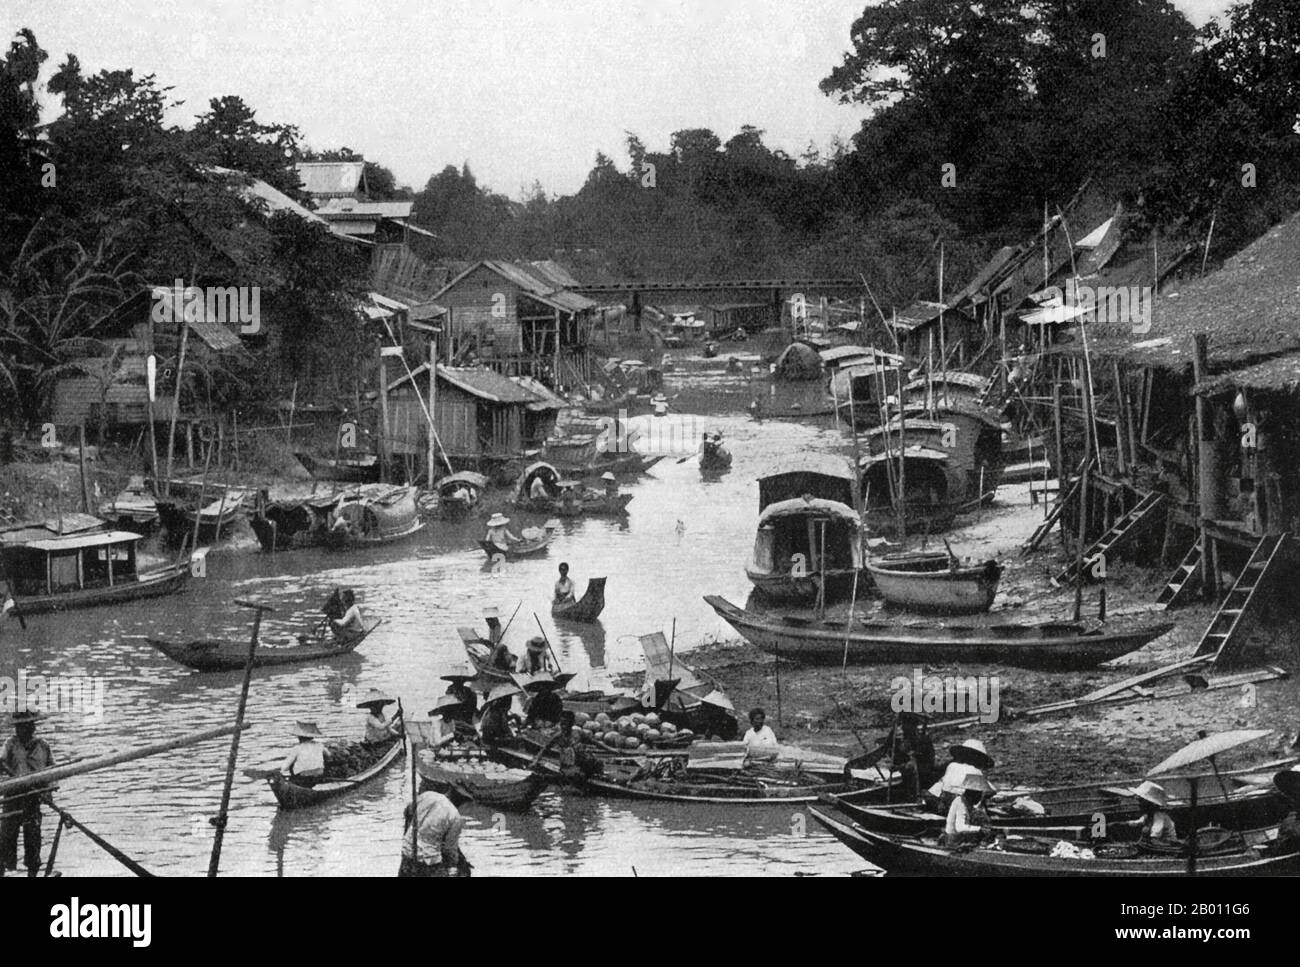 Thaïlande: Une scène de canal de Bangkok à marée basse, c. 1900. Au tournant du XXe siècle, la grande majorité des Siamois étaient des riziculteurs qui vivaient et travaillaient le long des cours d'eau. Chaque ménage avait un bateau, dont environ 600,000 navigué sur les canaux et les rivières de Bangkok. L'aviron a été fait de l'arrière du bateau. La plupart des maisons étaient en bois et en bambou, et ont été construites sur pilotis avec une échelle allant à l'eau. Banque D'Images